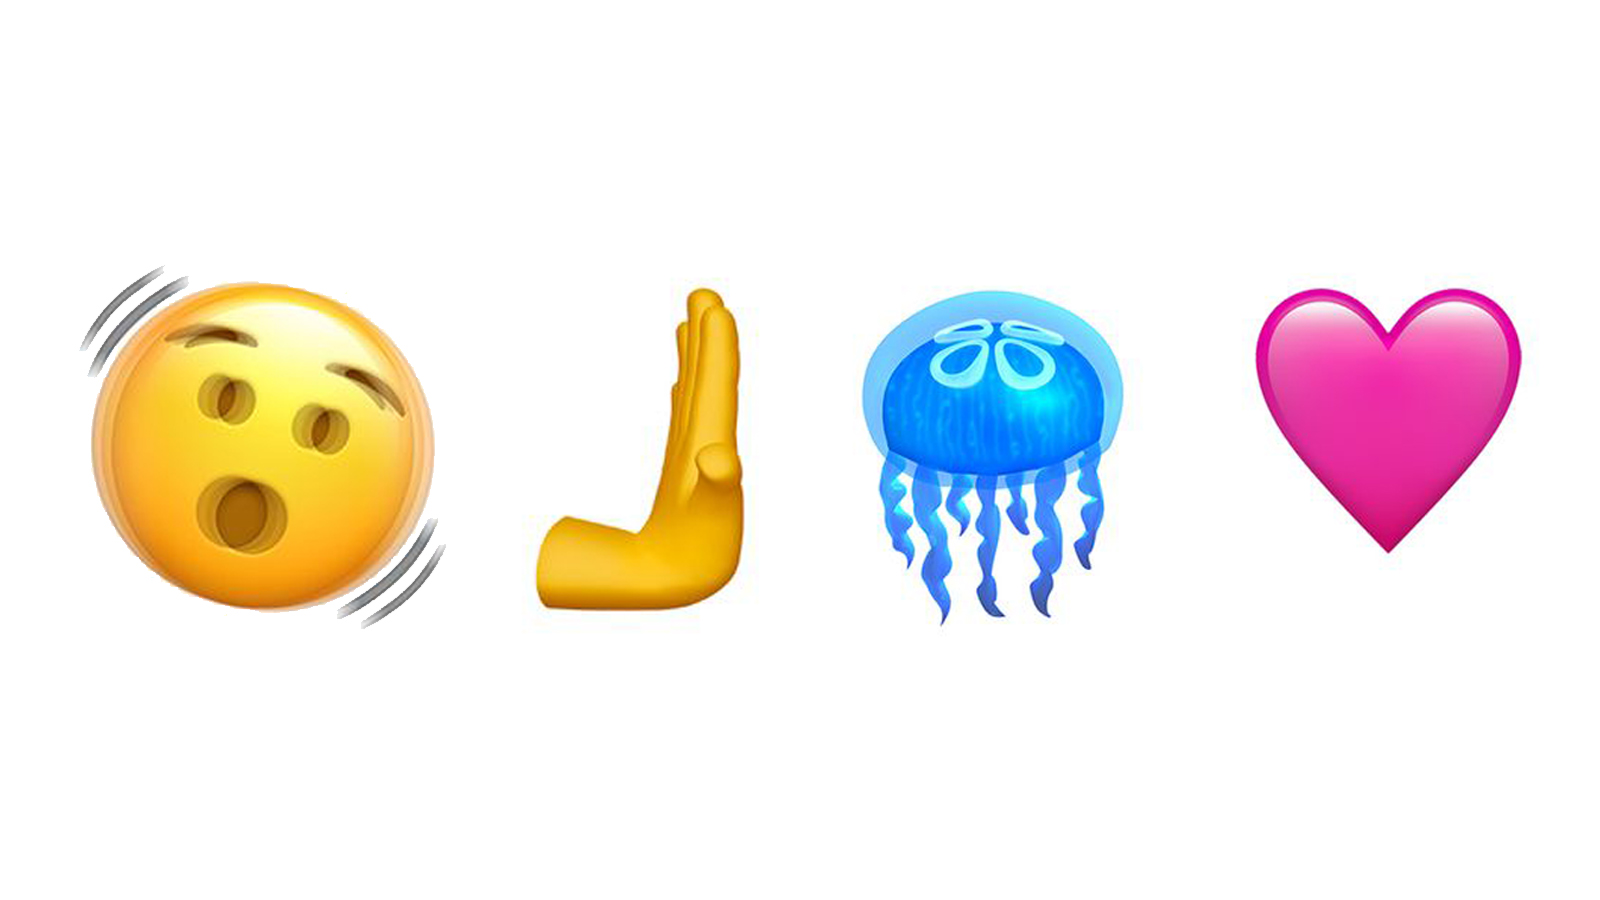 Four iOS 16.4 emojis